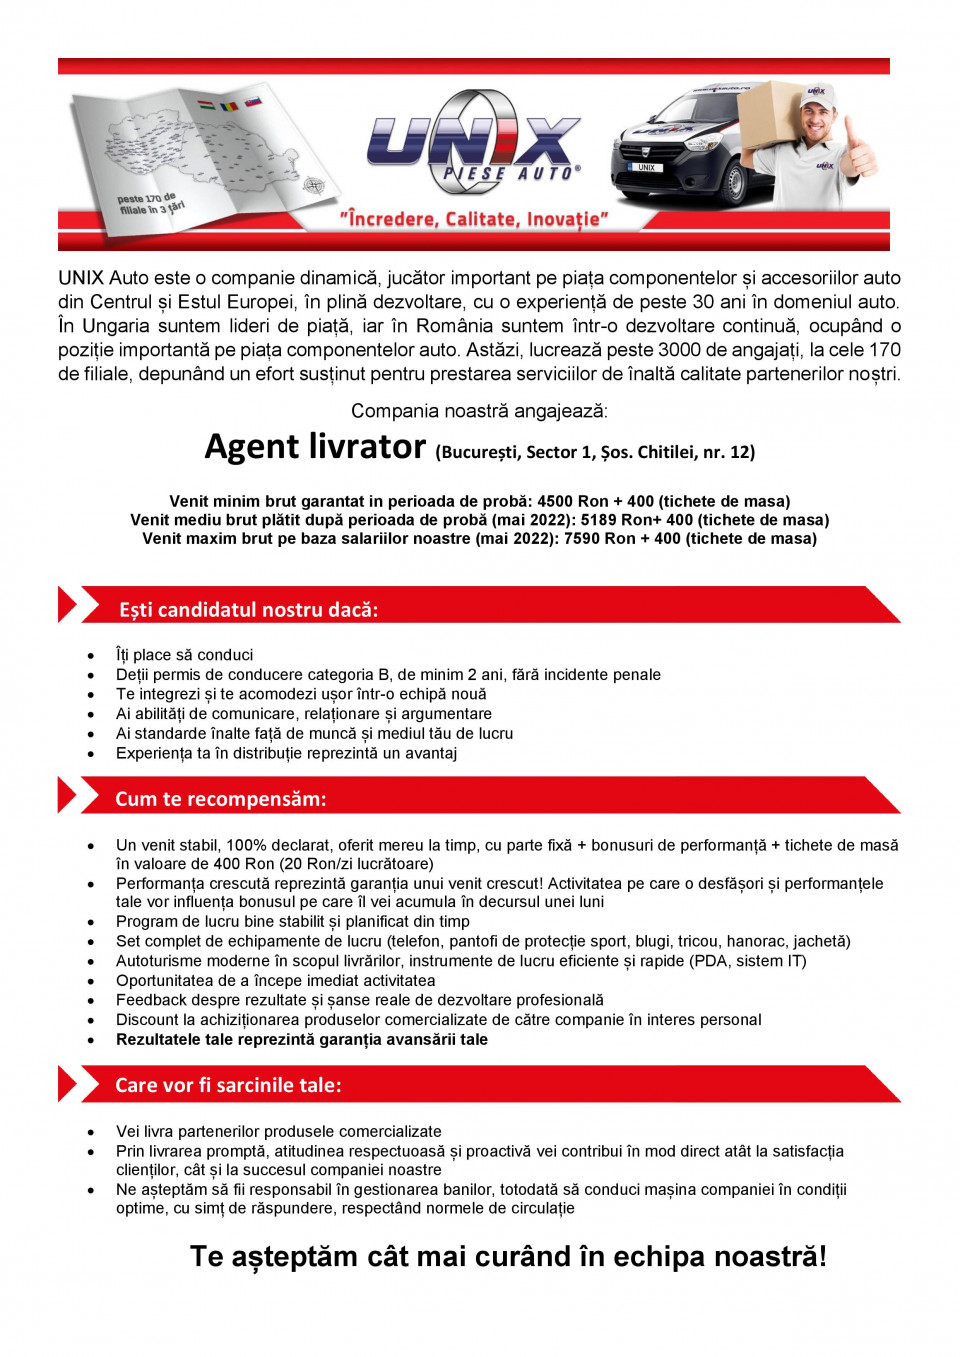 Agent livrator – Bucuresti, Sector 1 (Venit 4500 – 7590 Ron)